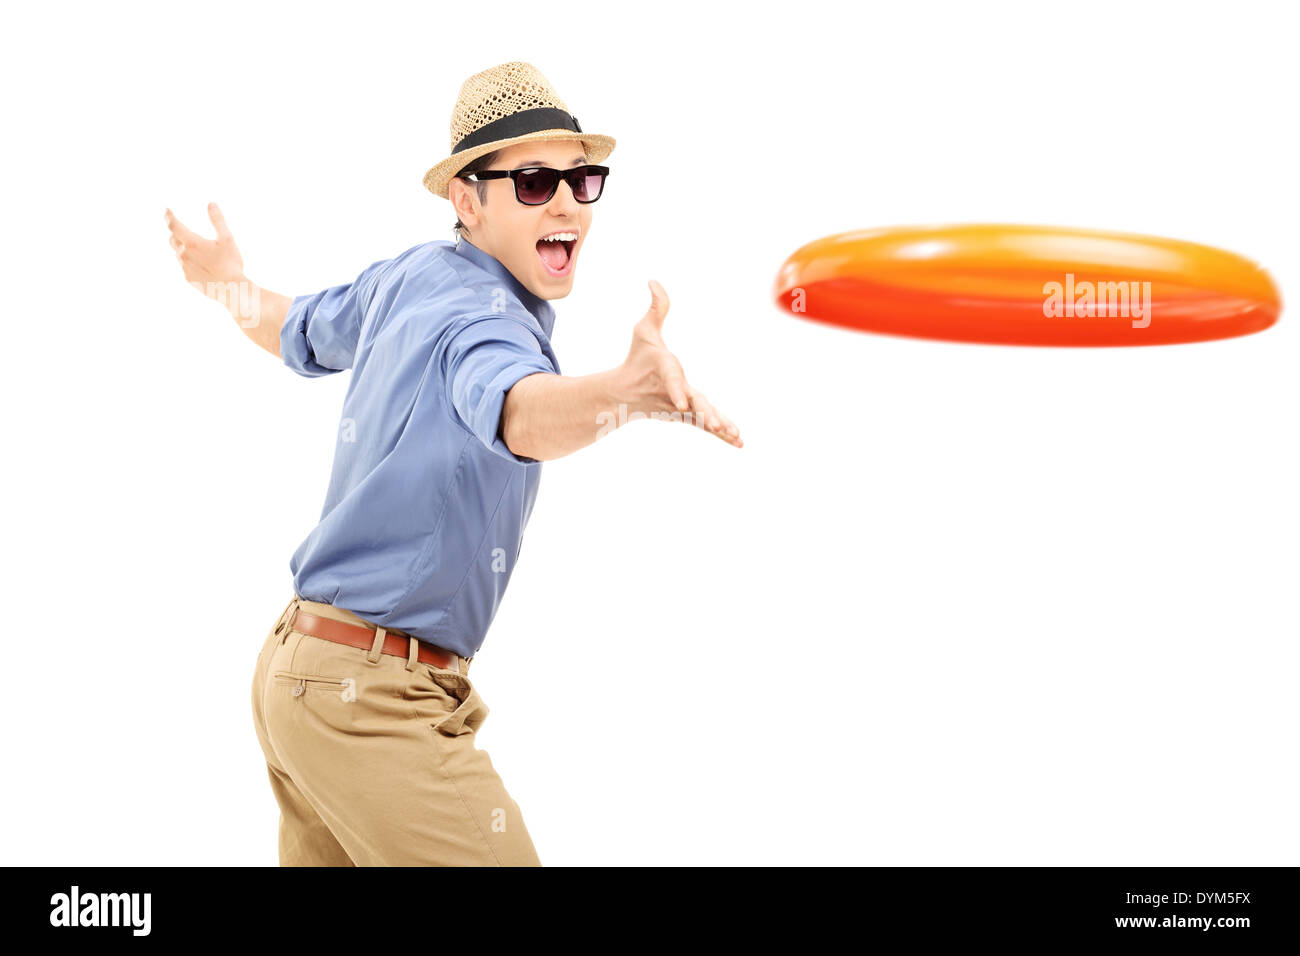 Play frisbee Imágenes recortadas de stock - Alamy